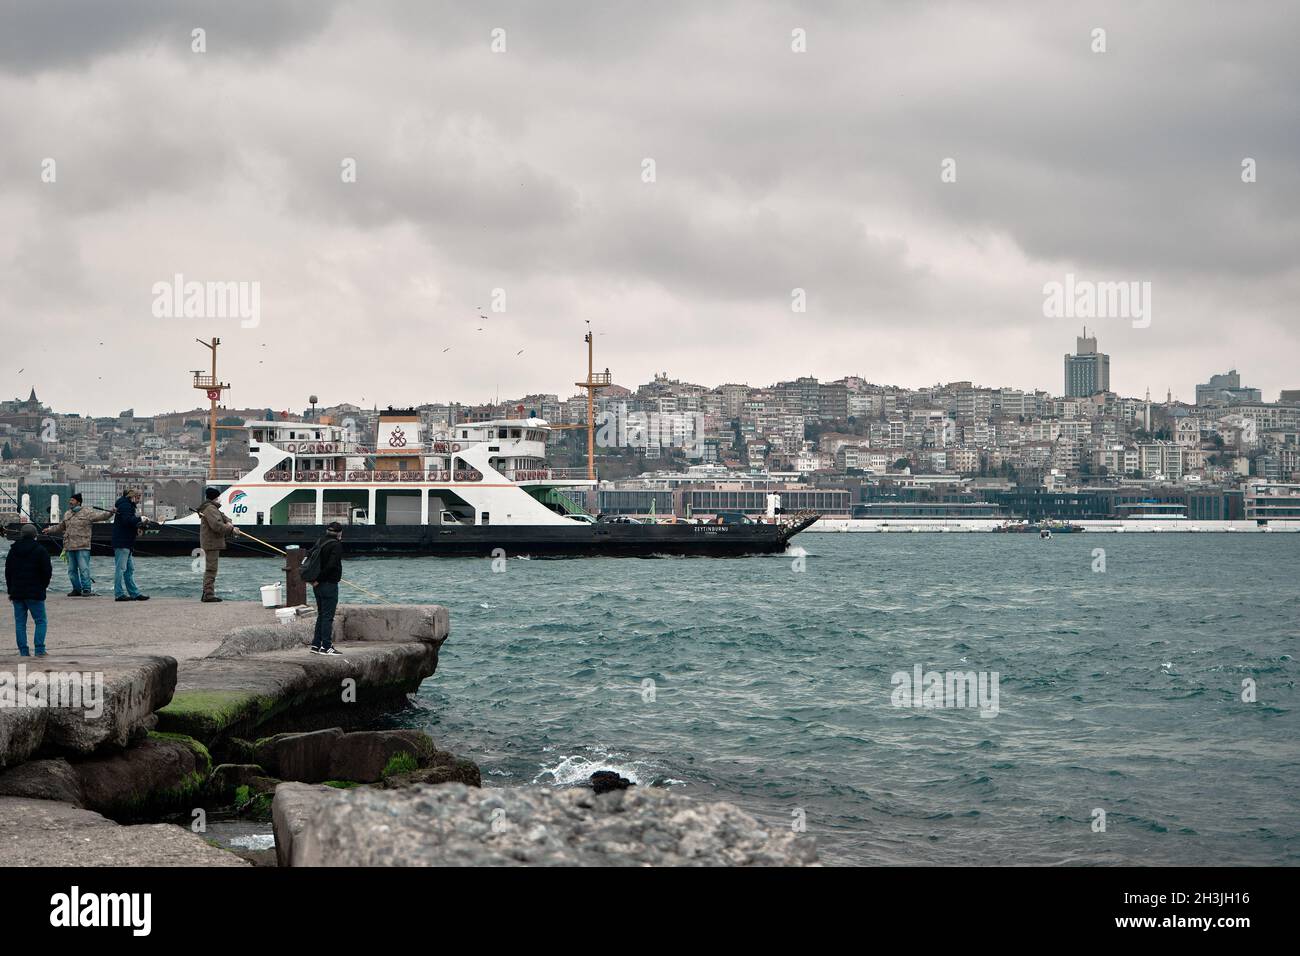 Fußgängerfähre, die in bosporus istanbul in der Nähe des sarayburnu-Viertels vorbeifährt, mit vielen Menschen, die bei bewölktem Wetter an der Küste spazieren und angeln Stockfoto